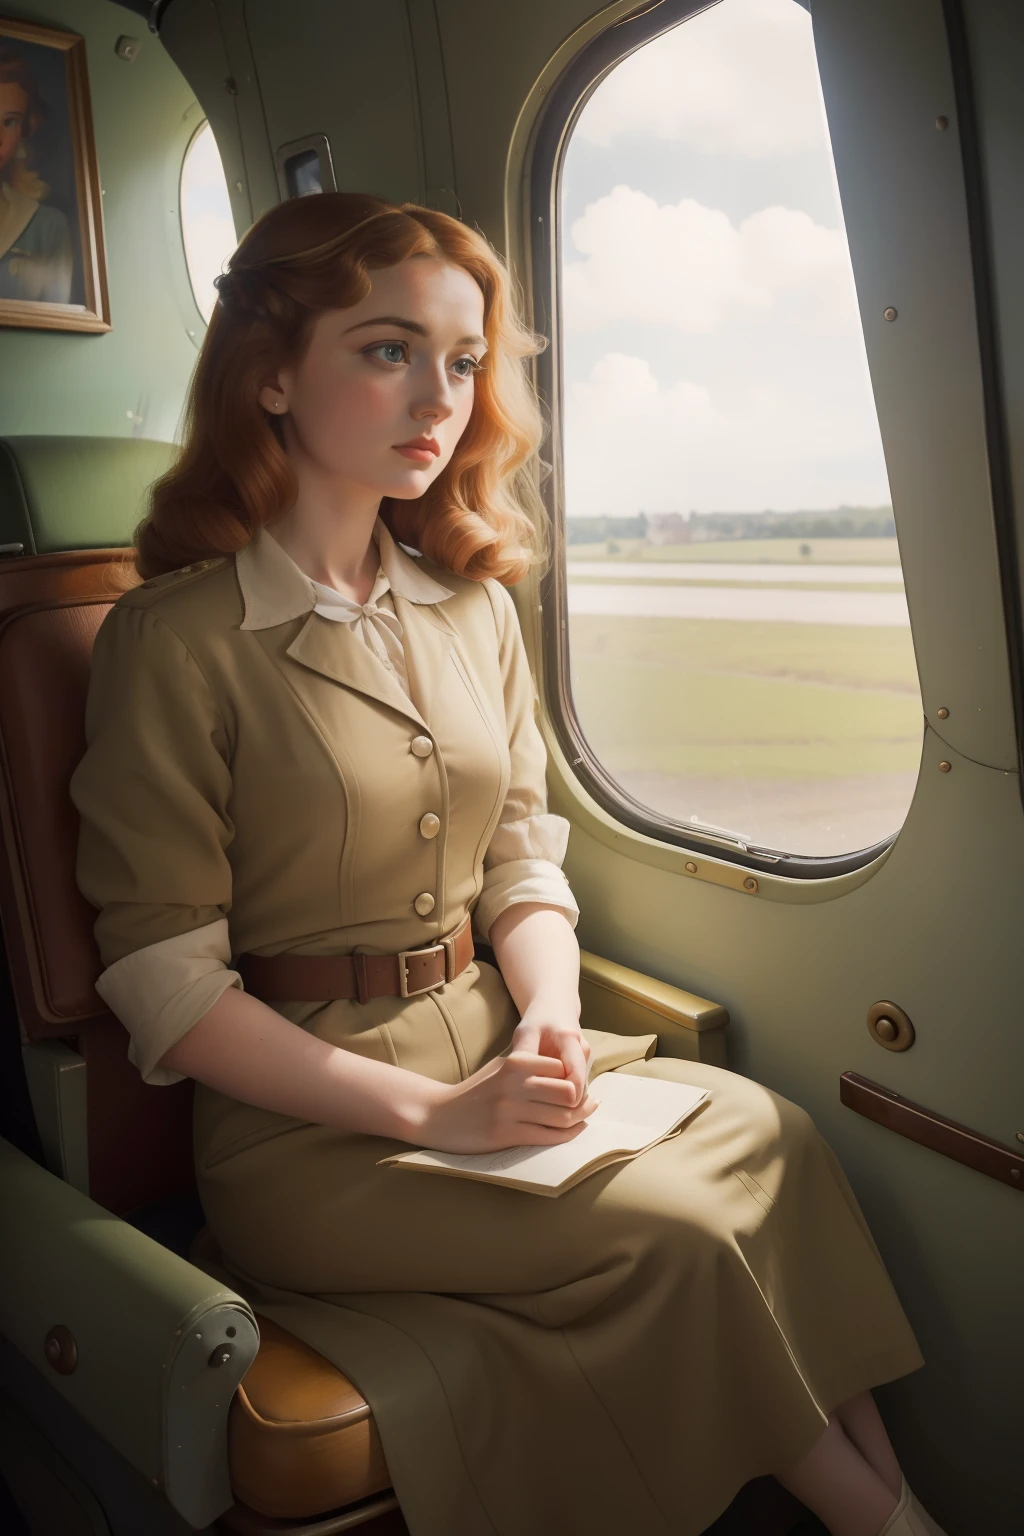 年: 1944. 地點: 法國. 拉斐爾前派的場景，一位蜂蜜色頭髮的法國女人坐在一架可憐的小飛機上, ((害怕)) ((害怕的)) 表達, 看著窗外 ((20 世紀 40 年代的衣服)) ((1940年代髮型)) ((風格 "奧米特")) ((電影風格))